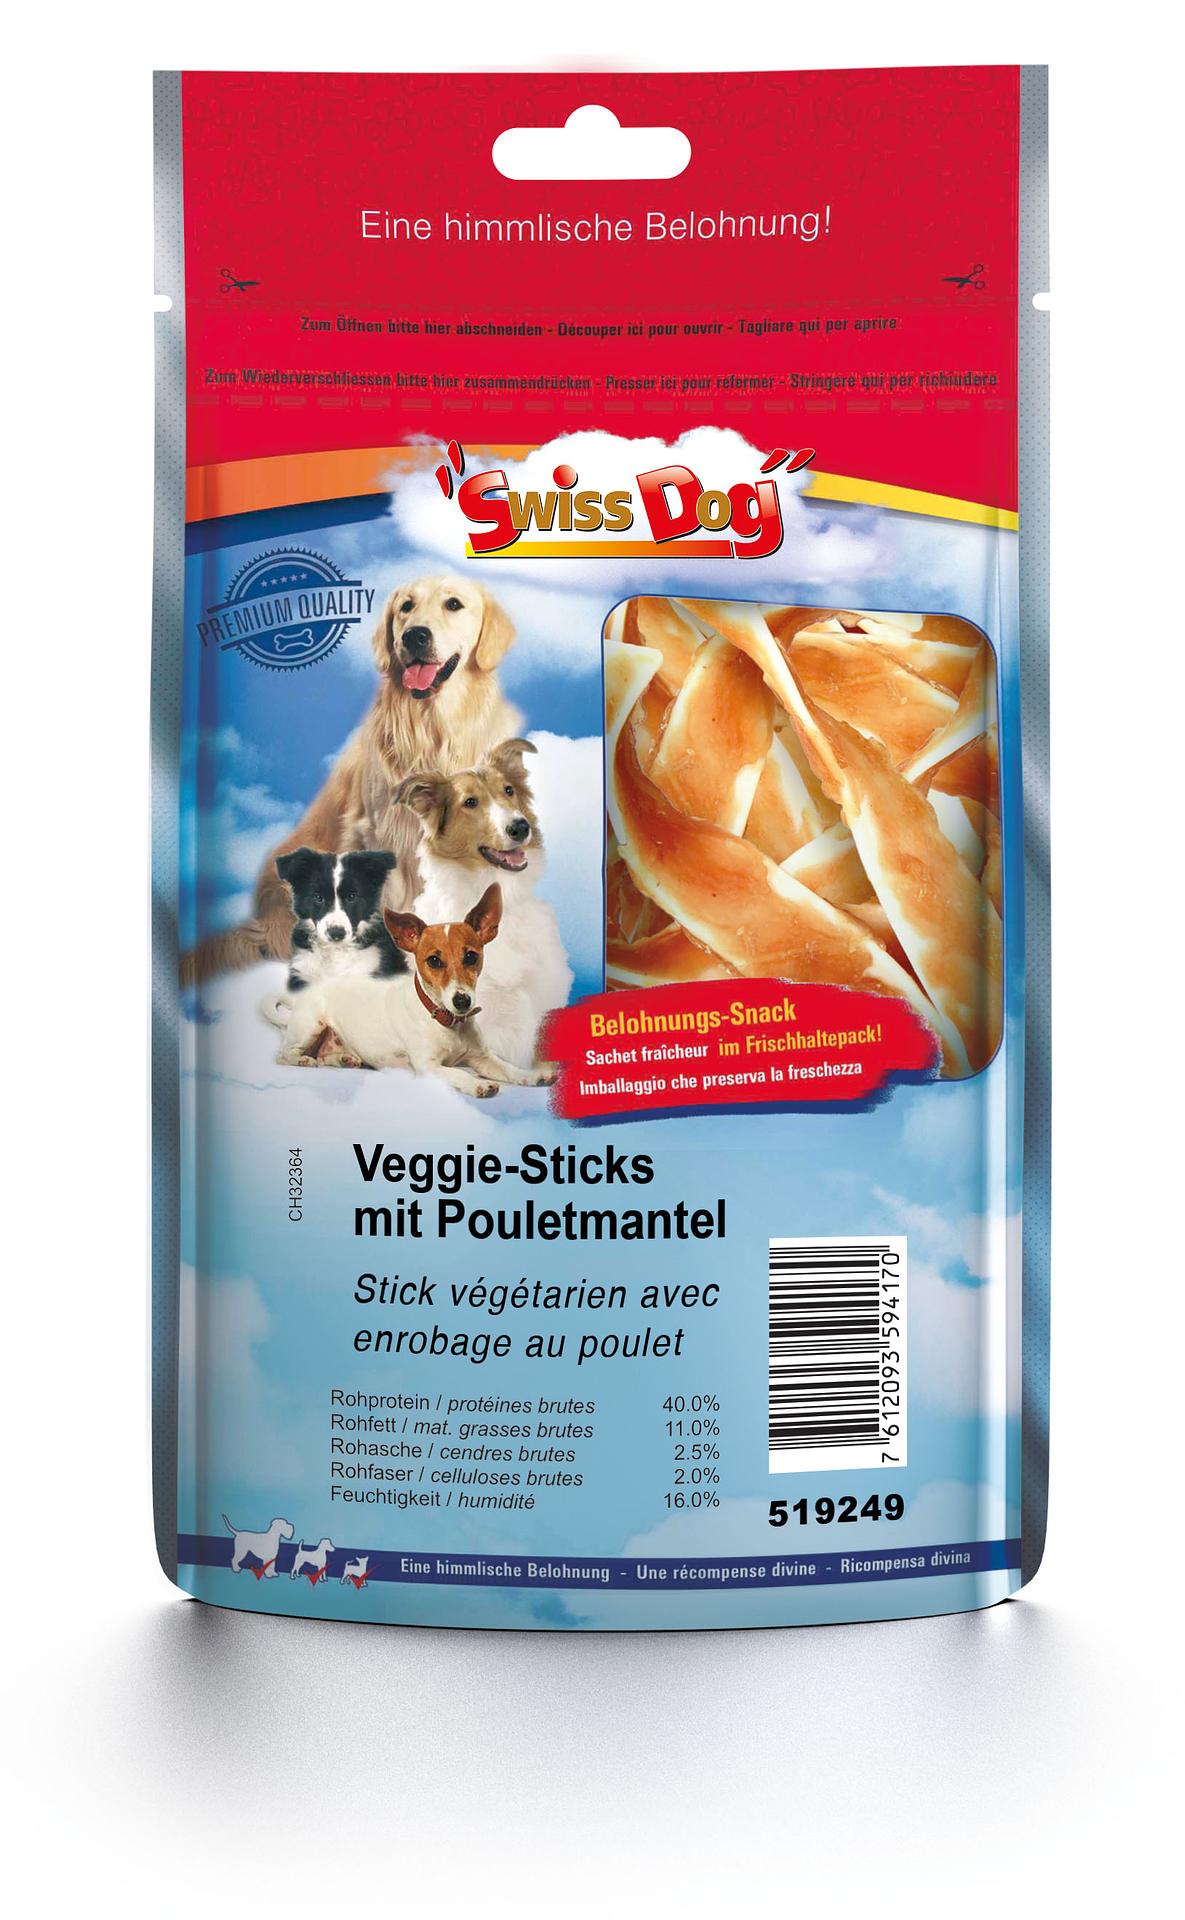 SwissDog stick végétarien avec enrobage au poulet